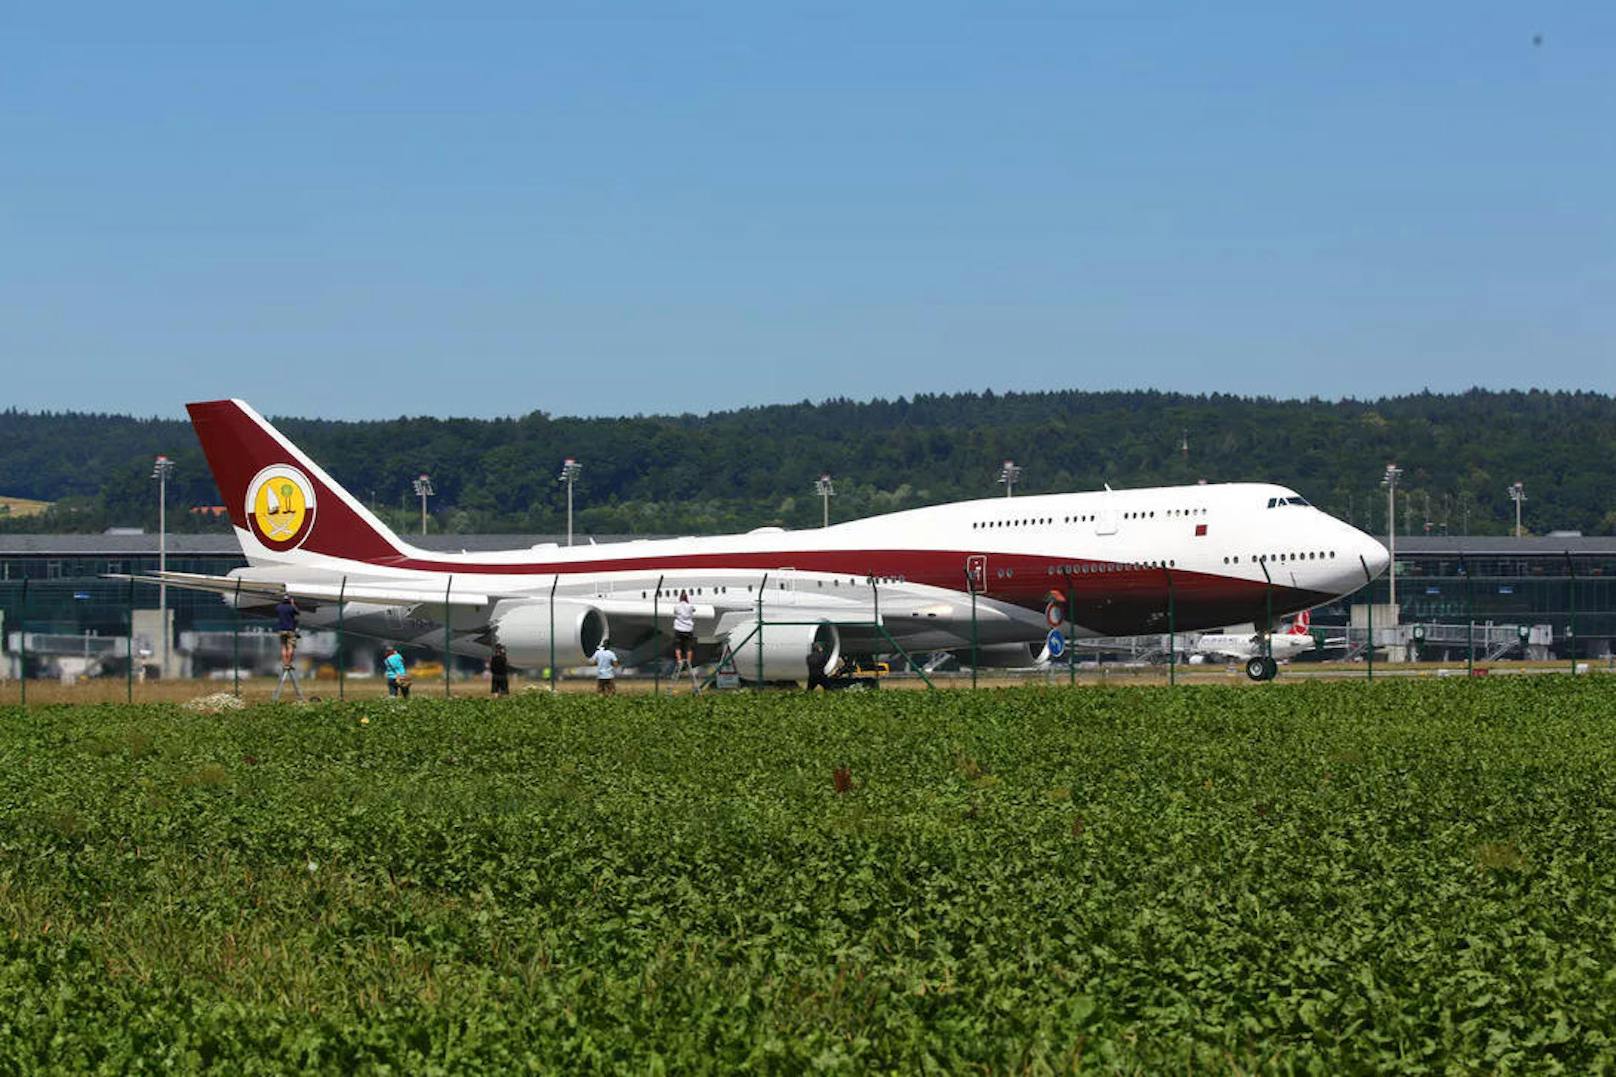 Seit vergangener Woche steht die als "fliegender Sultanspalast" bezeichnete Boeing 747-8i in Istanbul. Ihr Wert wird auf 500 Millionen US-Dollar geschätzt.